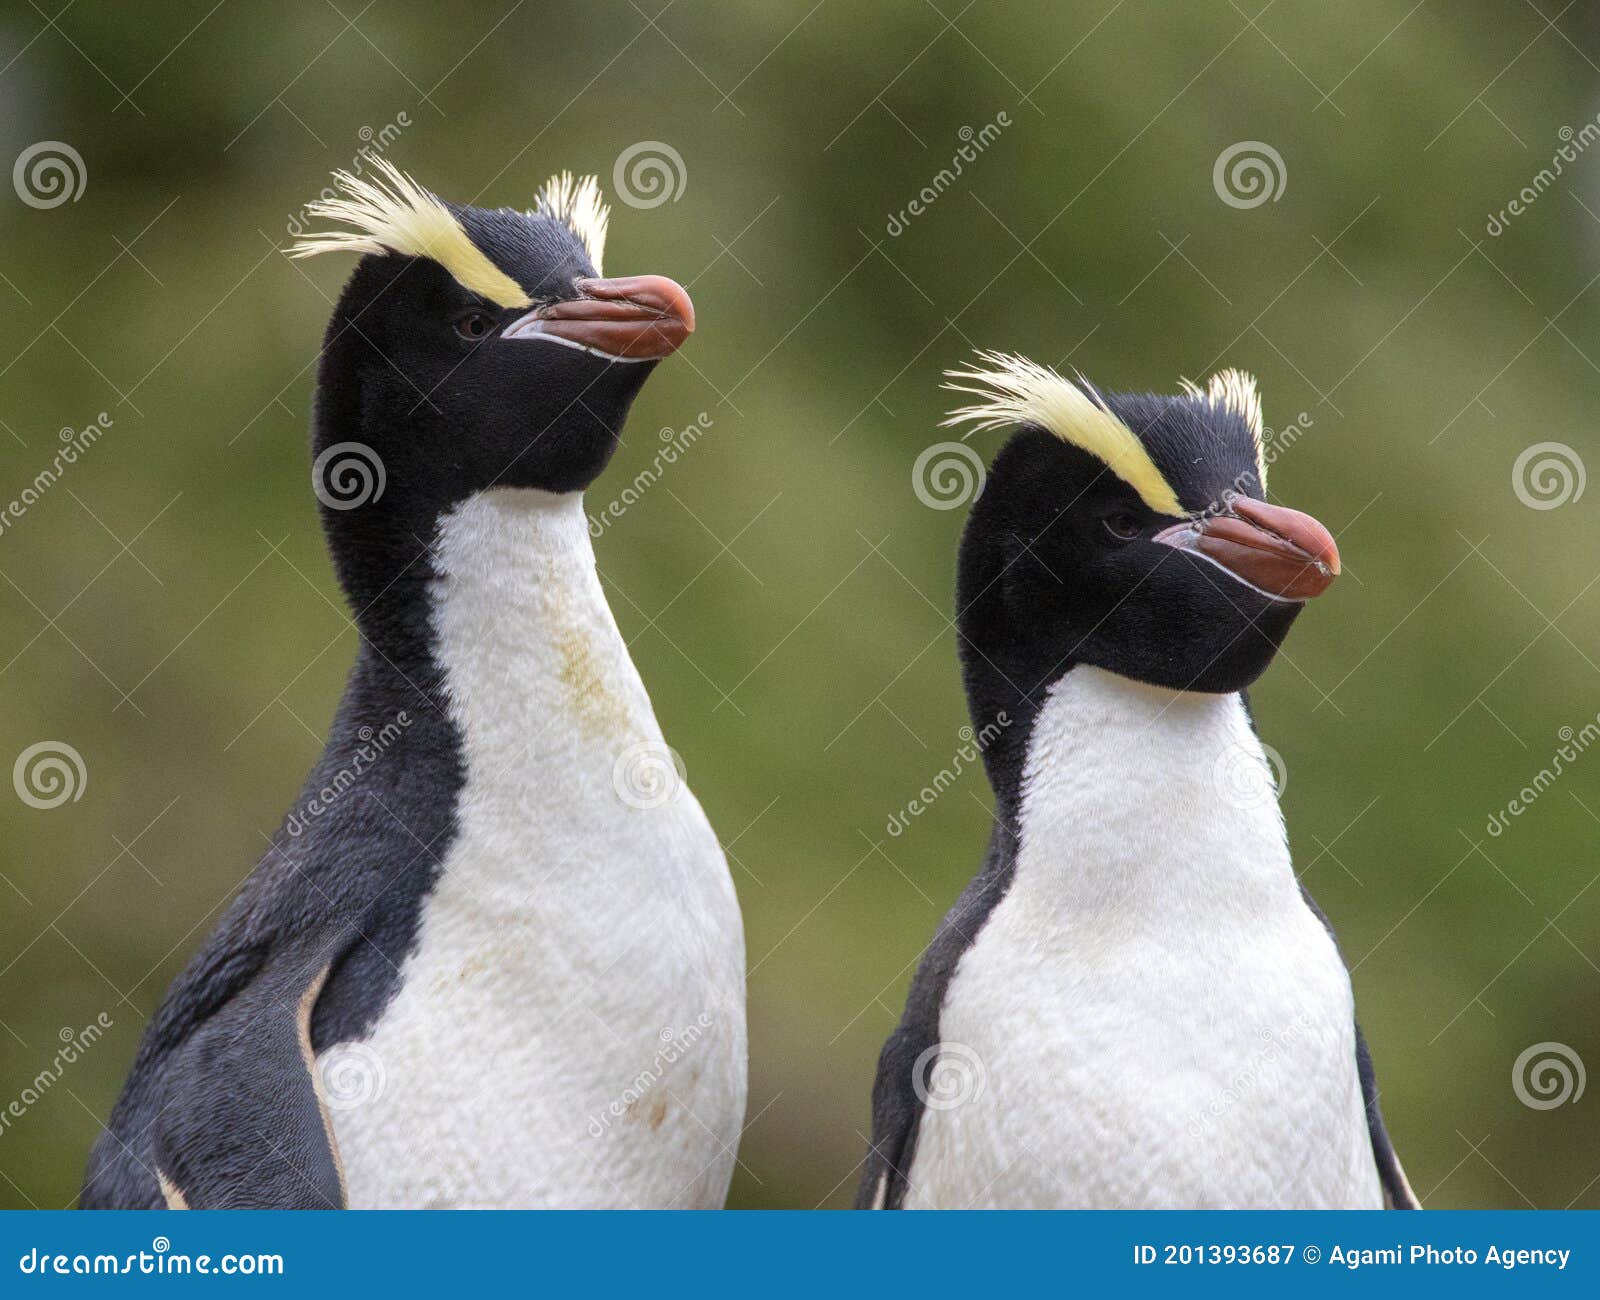 erect-crested penguin, eudyptes sclateri